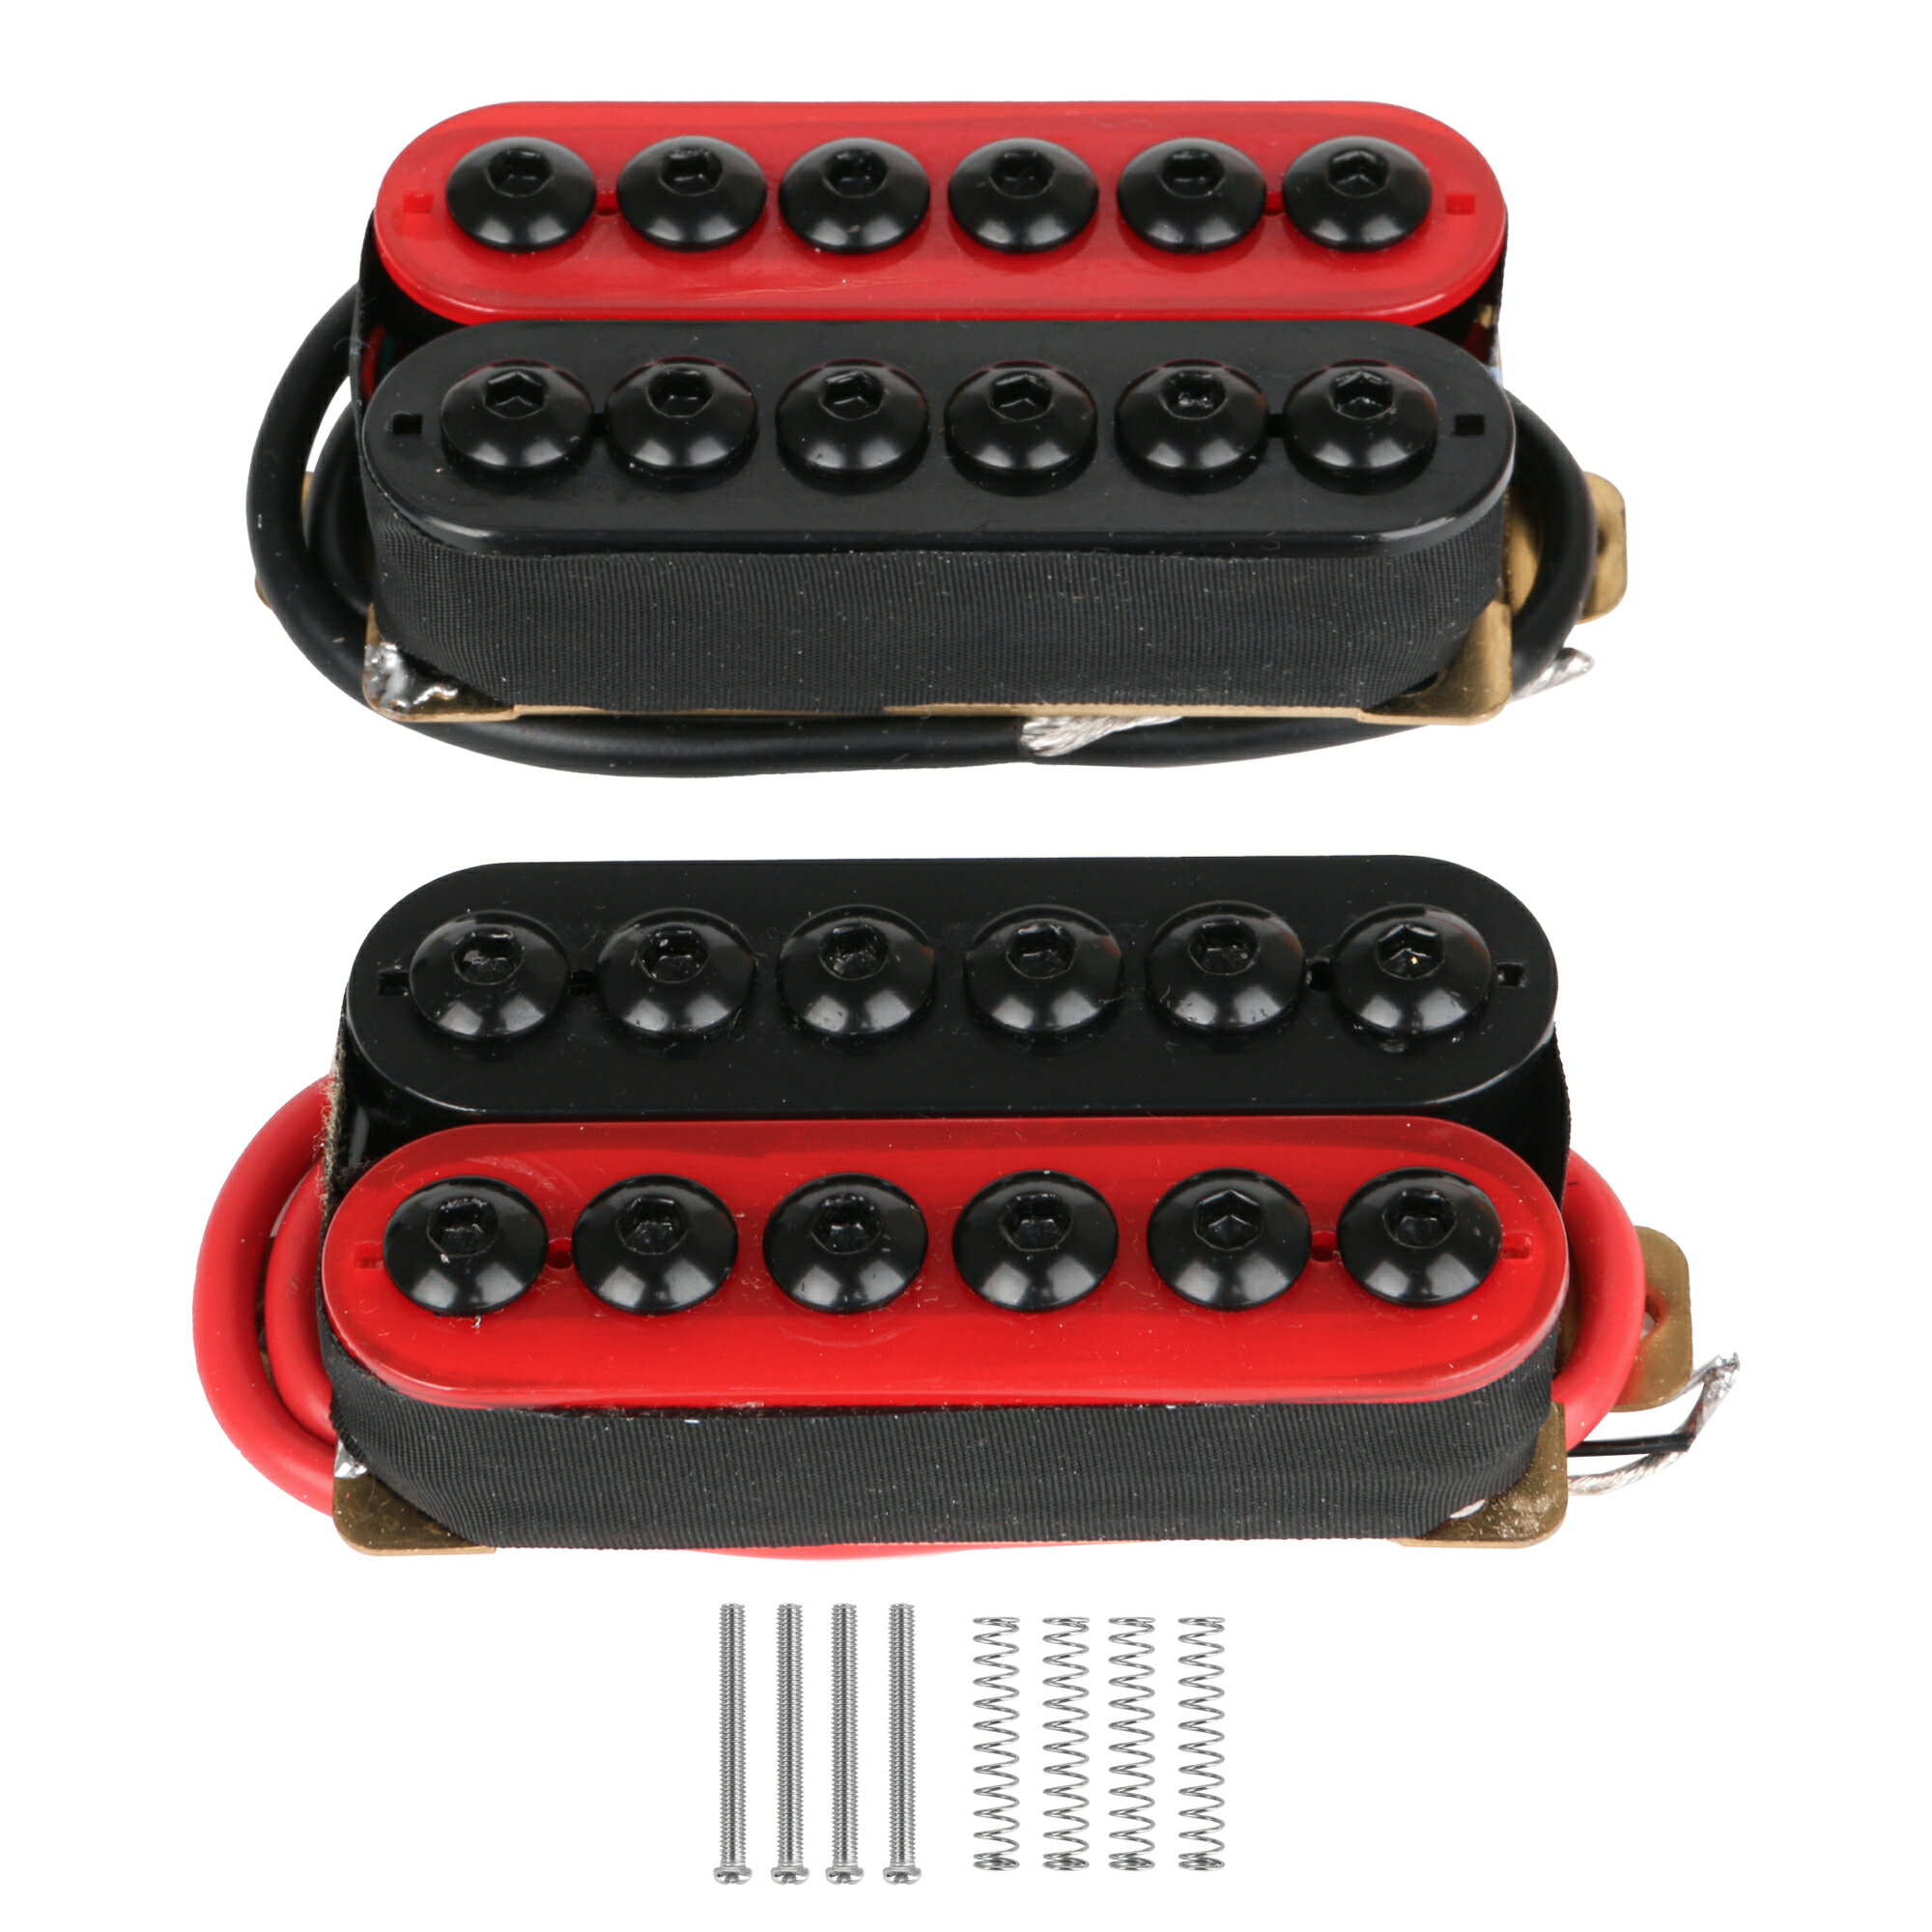 ギターピックアップセット ハムバッカー エレキギター用 ネジ/スプリング付き 高出力 レッド&ブラック